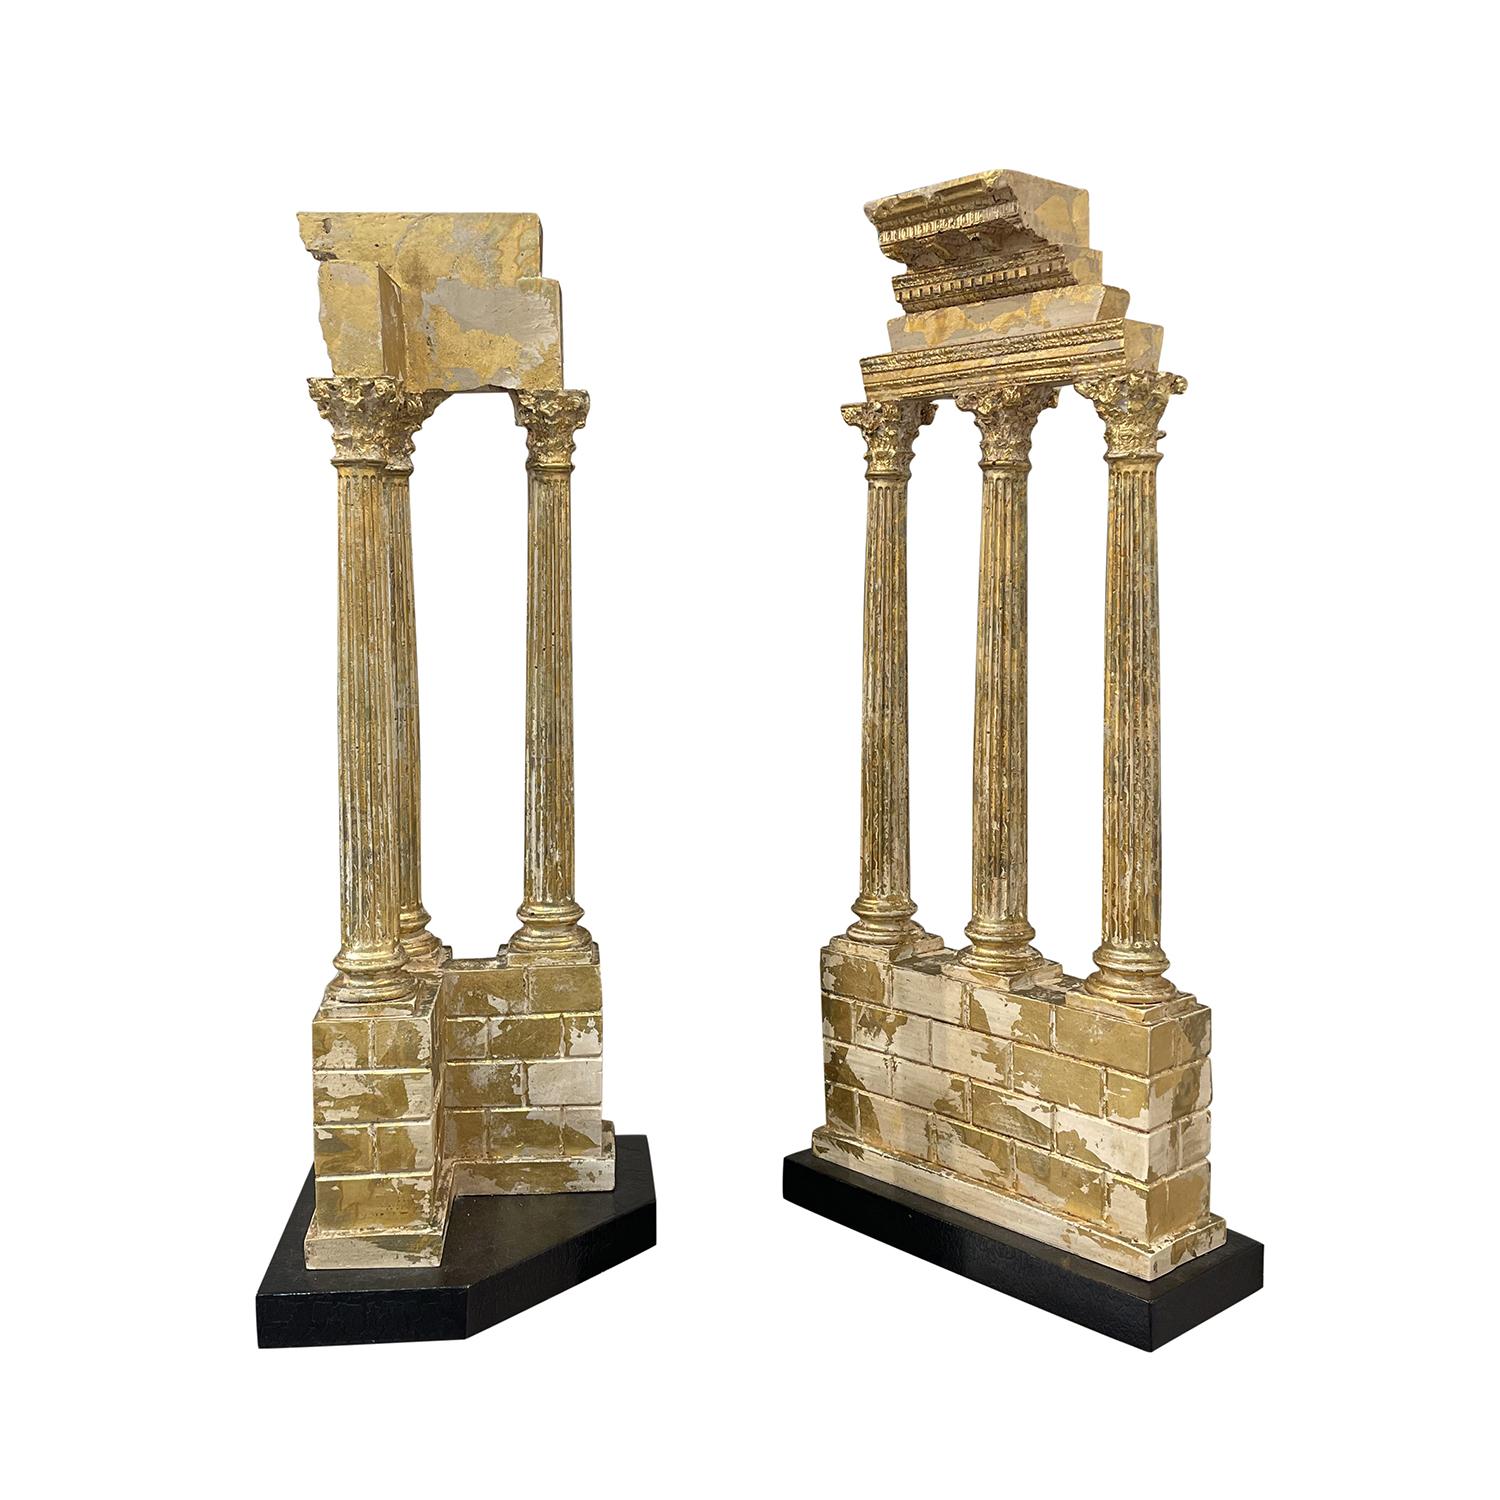 Antiker italienischer Satz von Grand-Tour-Modellen, Fragmente des Tempels von Castor und Pollux aus handgefertigtem vergoldetem Stein, in gutem Zustand. Die detaillierten Säulen ruhen auf einem rechteckigen Sockel. Alters- und gebrauchsbedingte